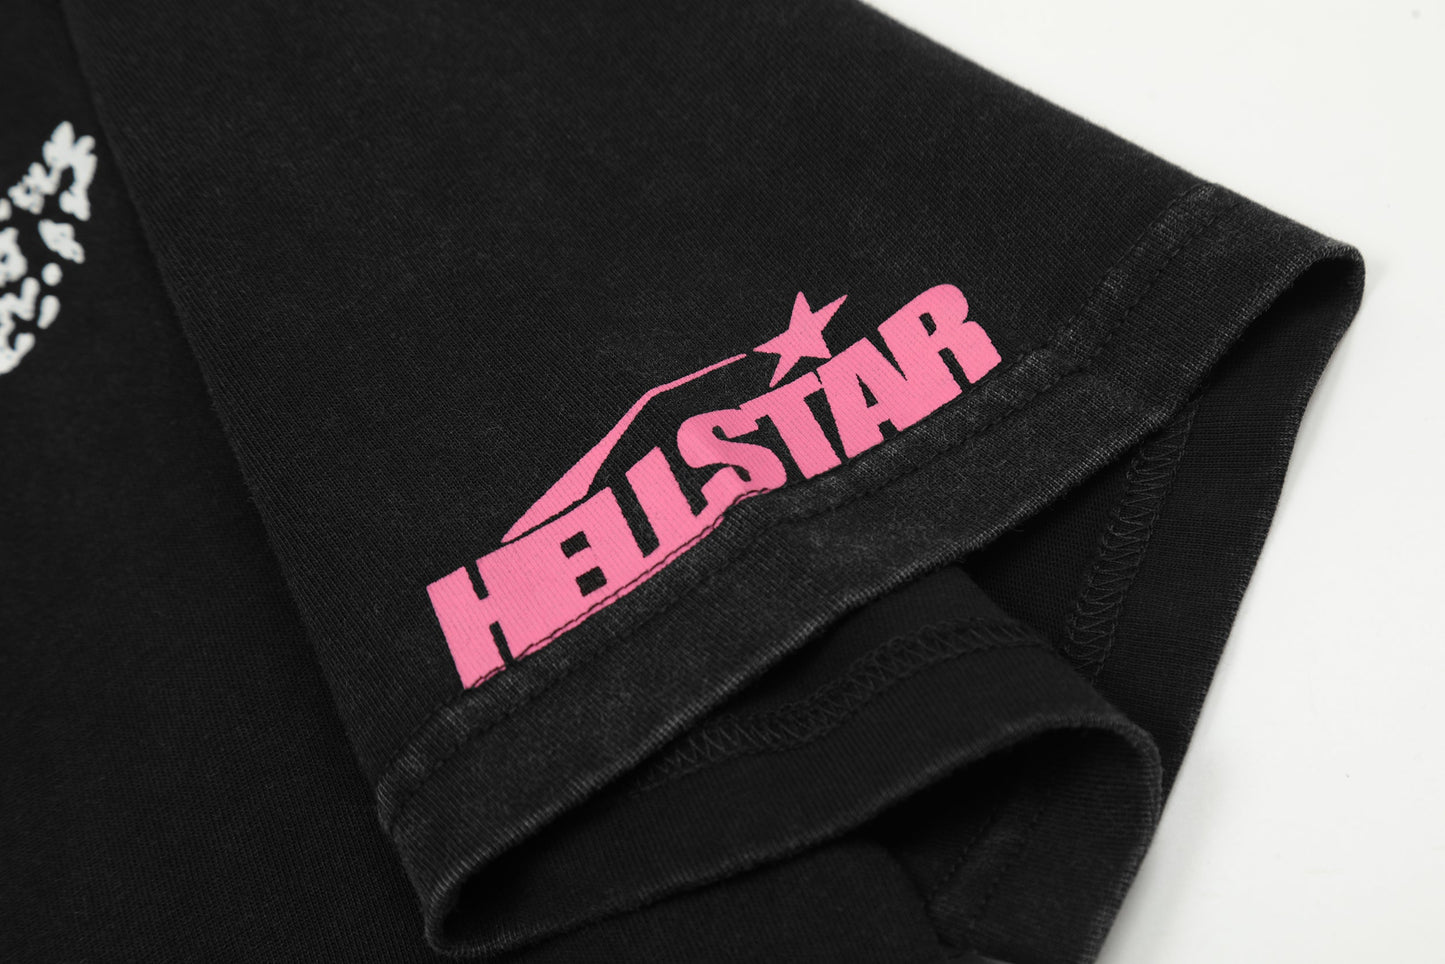 Hellstar 2024 nouveau T-shirt mode